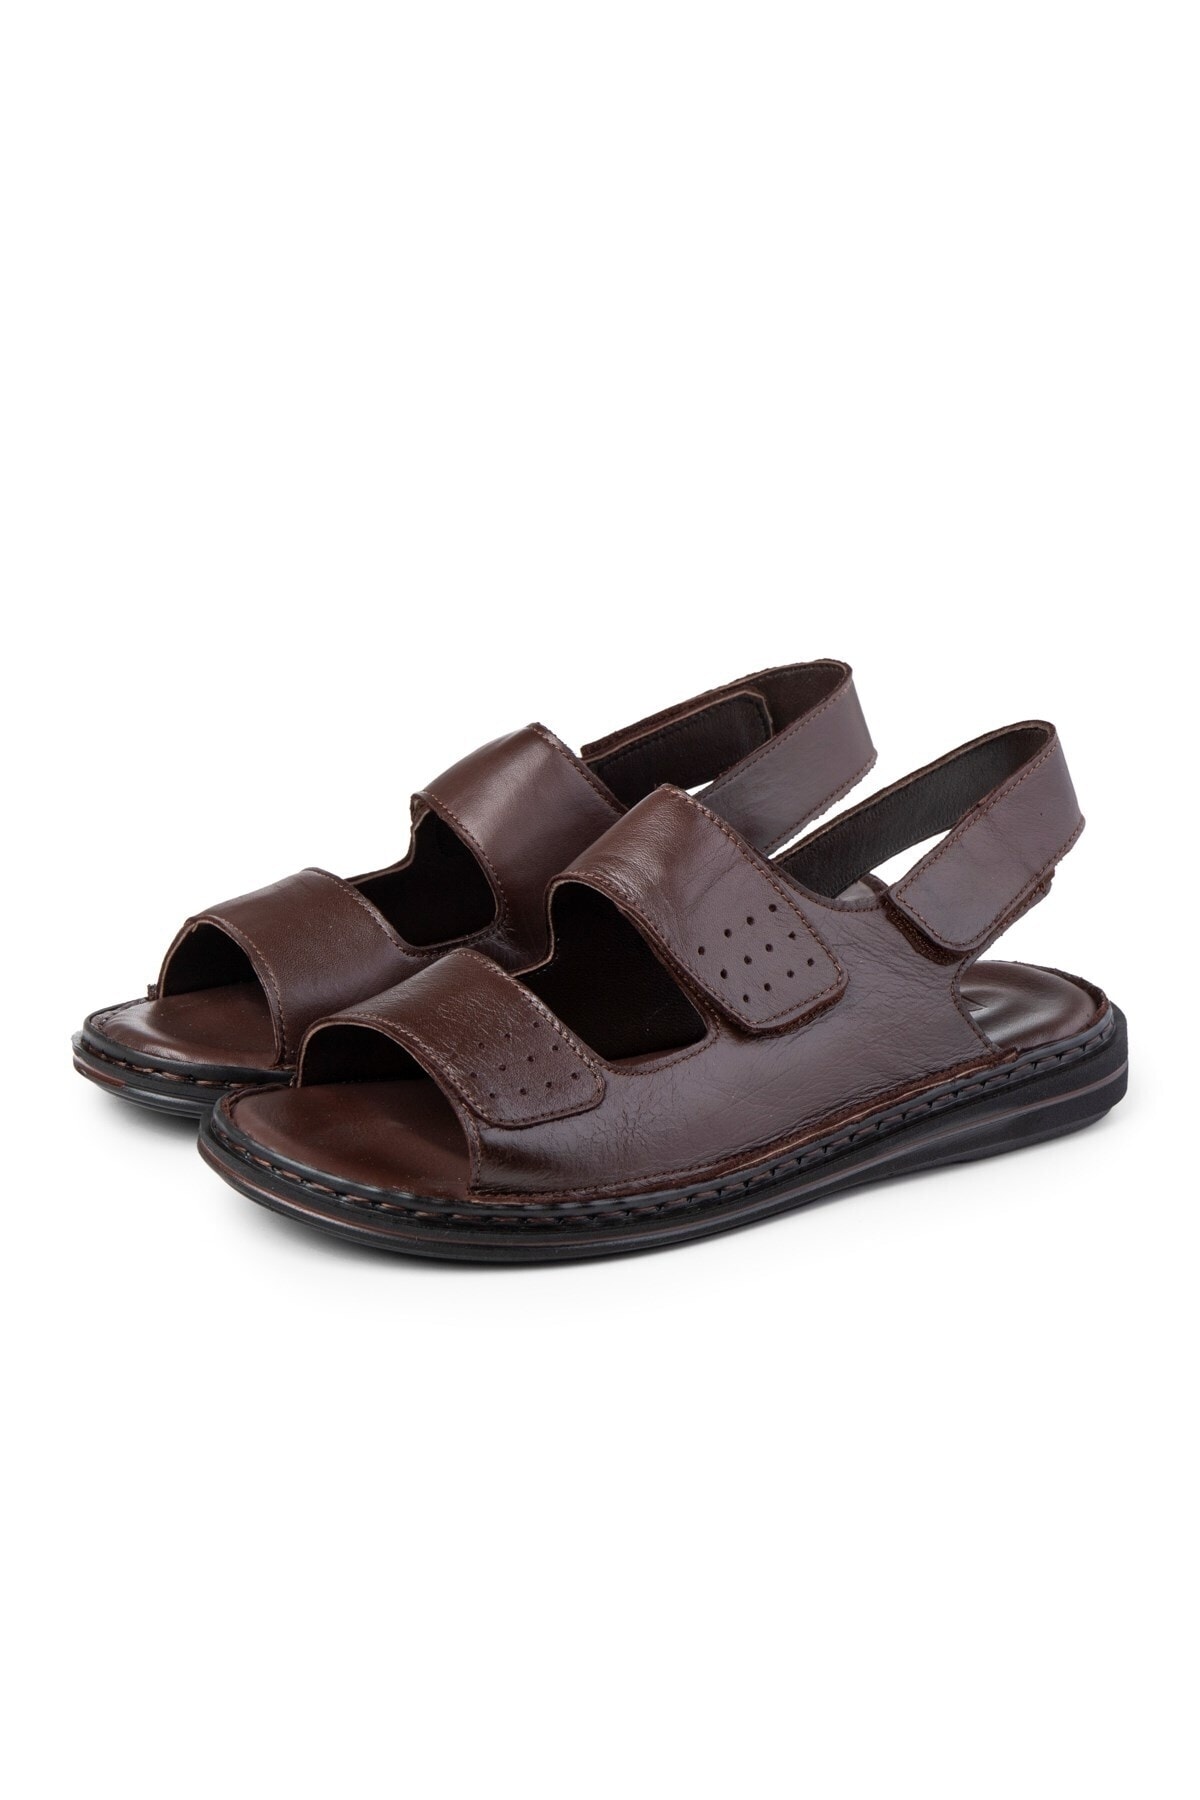 Ducavelli Luas Men's Genuine Leather Sandals, Genuine Leather Sandals, Orthopedic Sole Sandals.